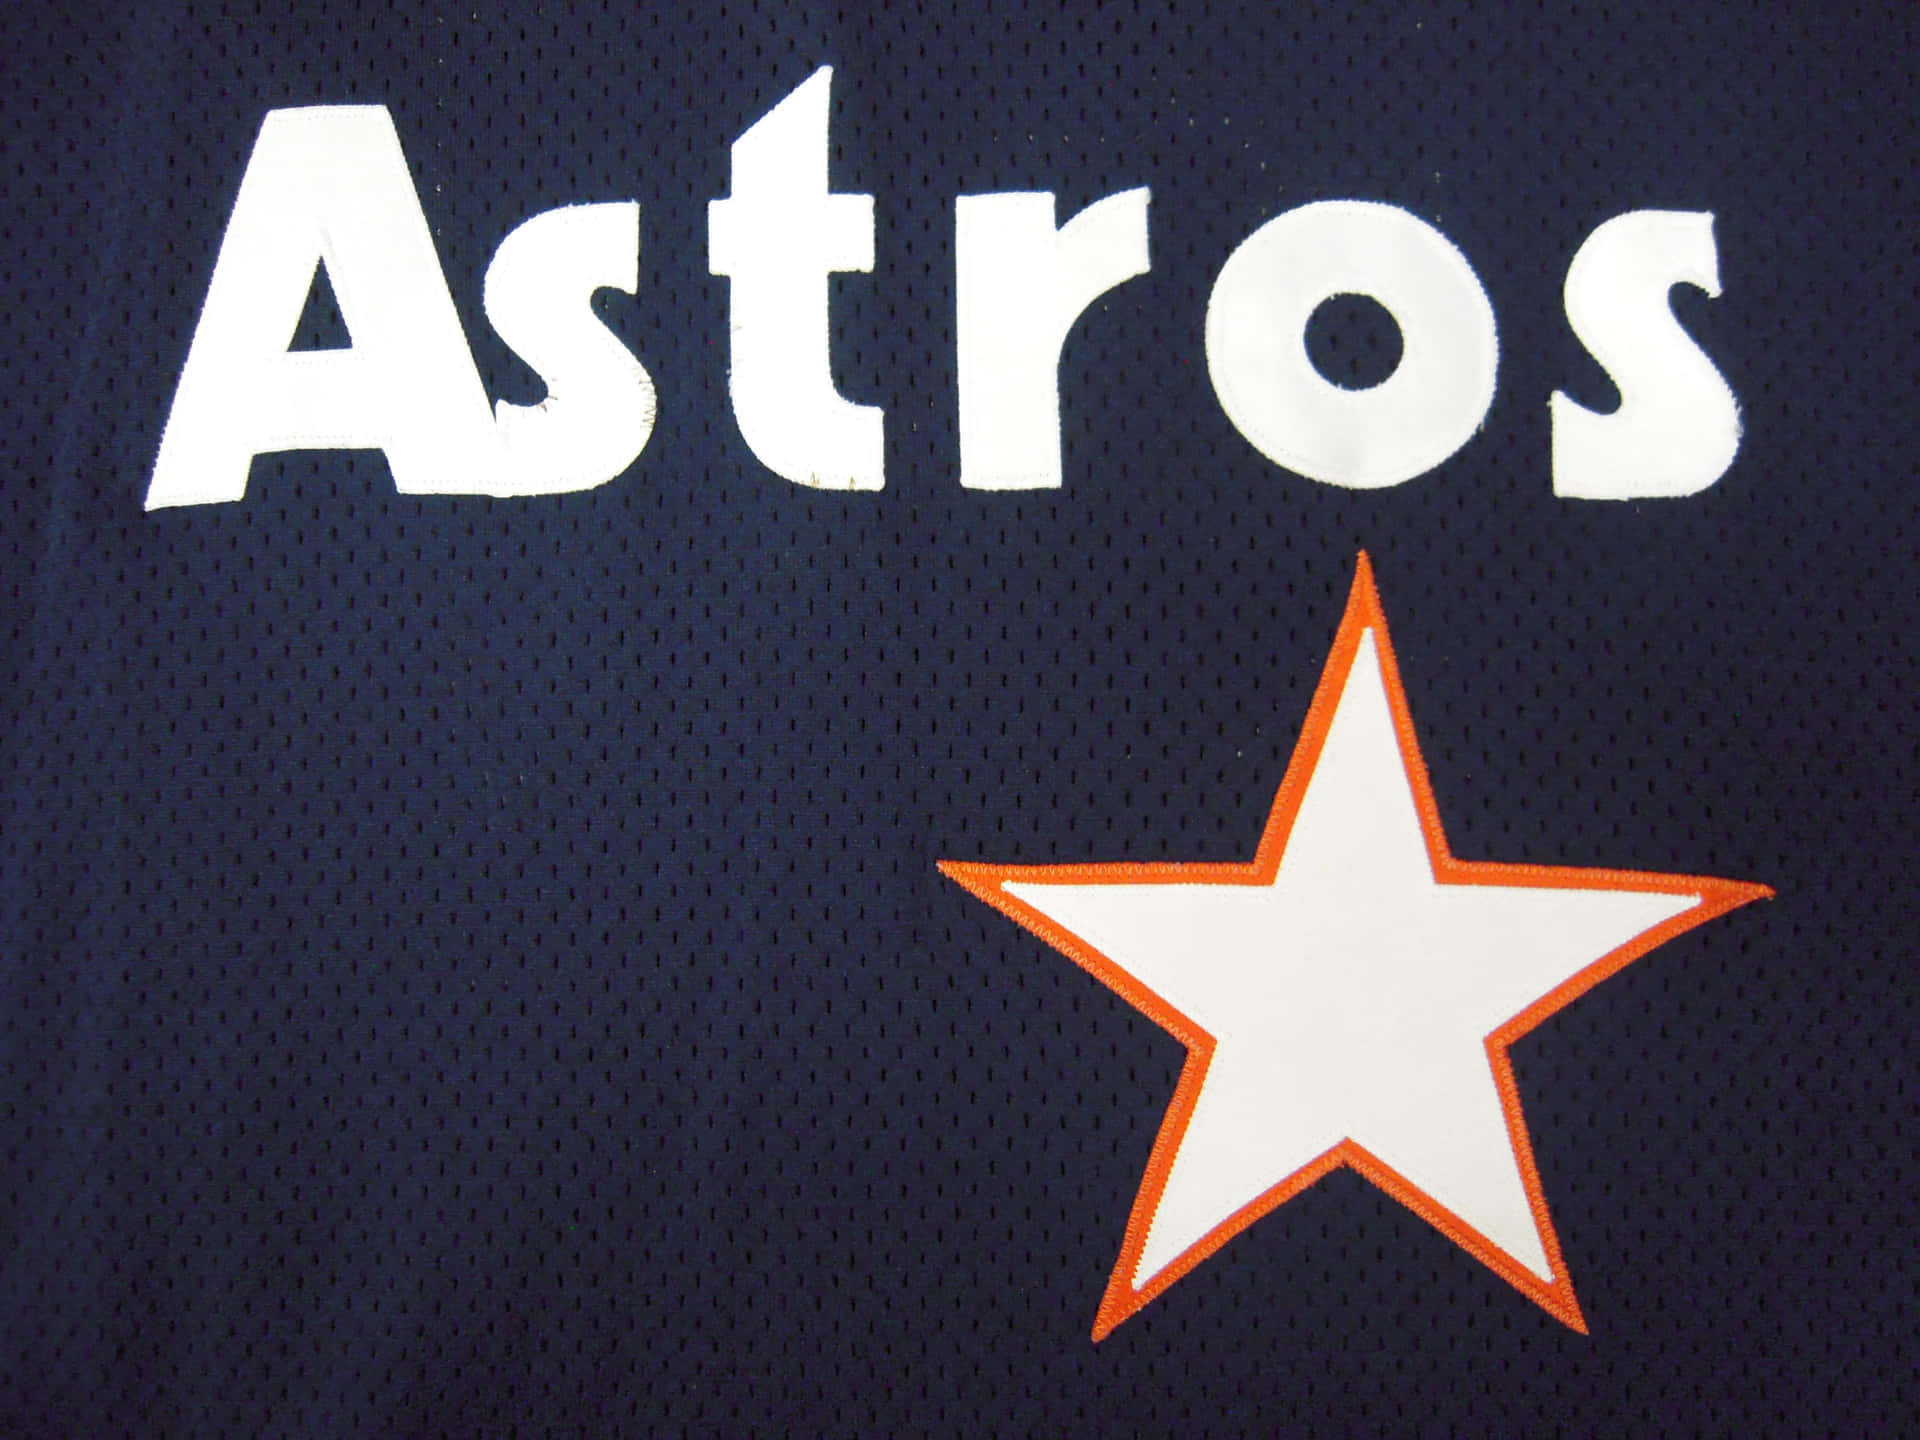 Astros3648 X 2736 Baggrund.